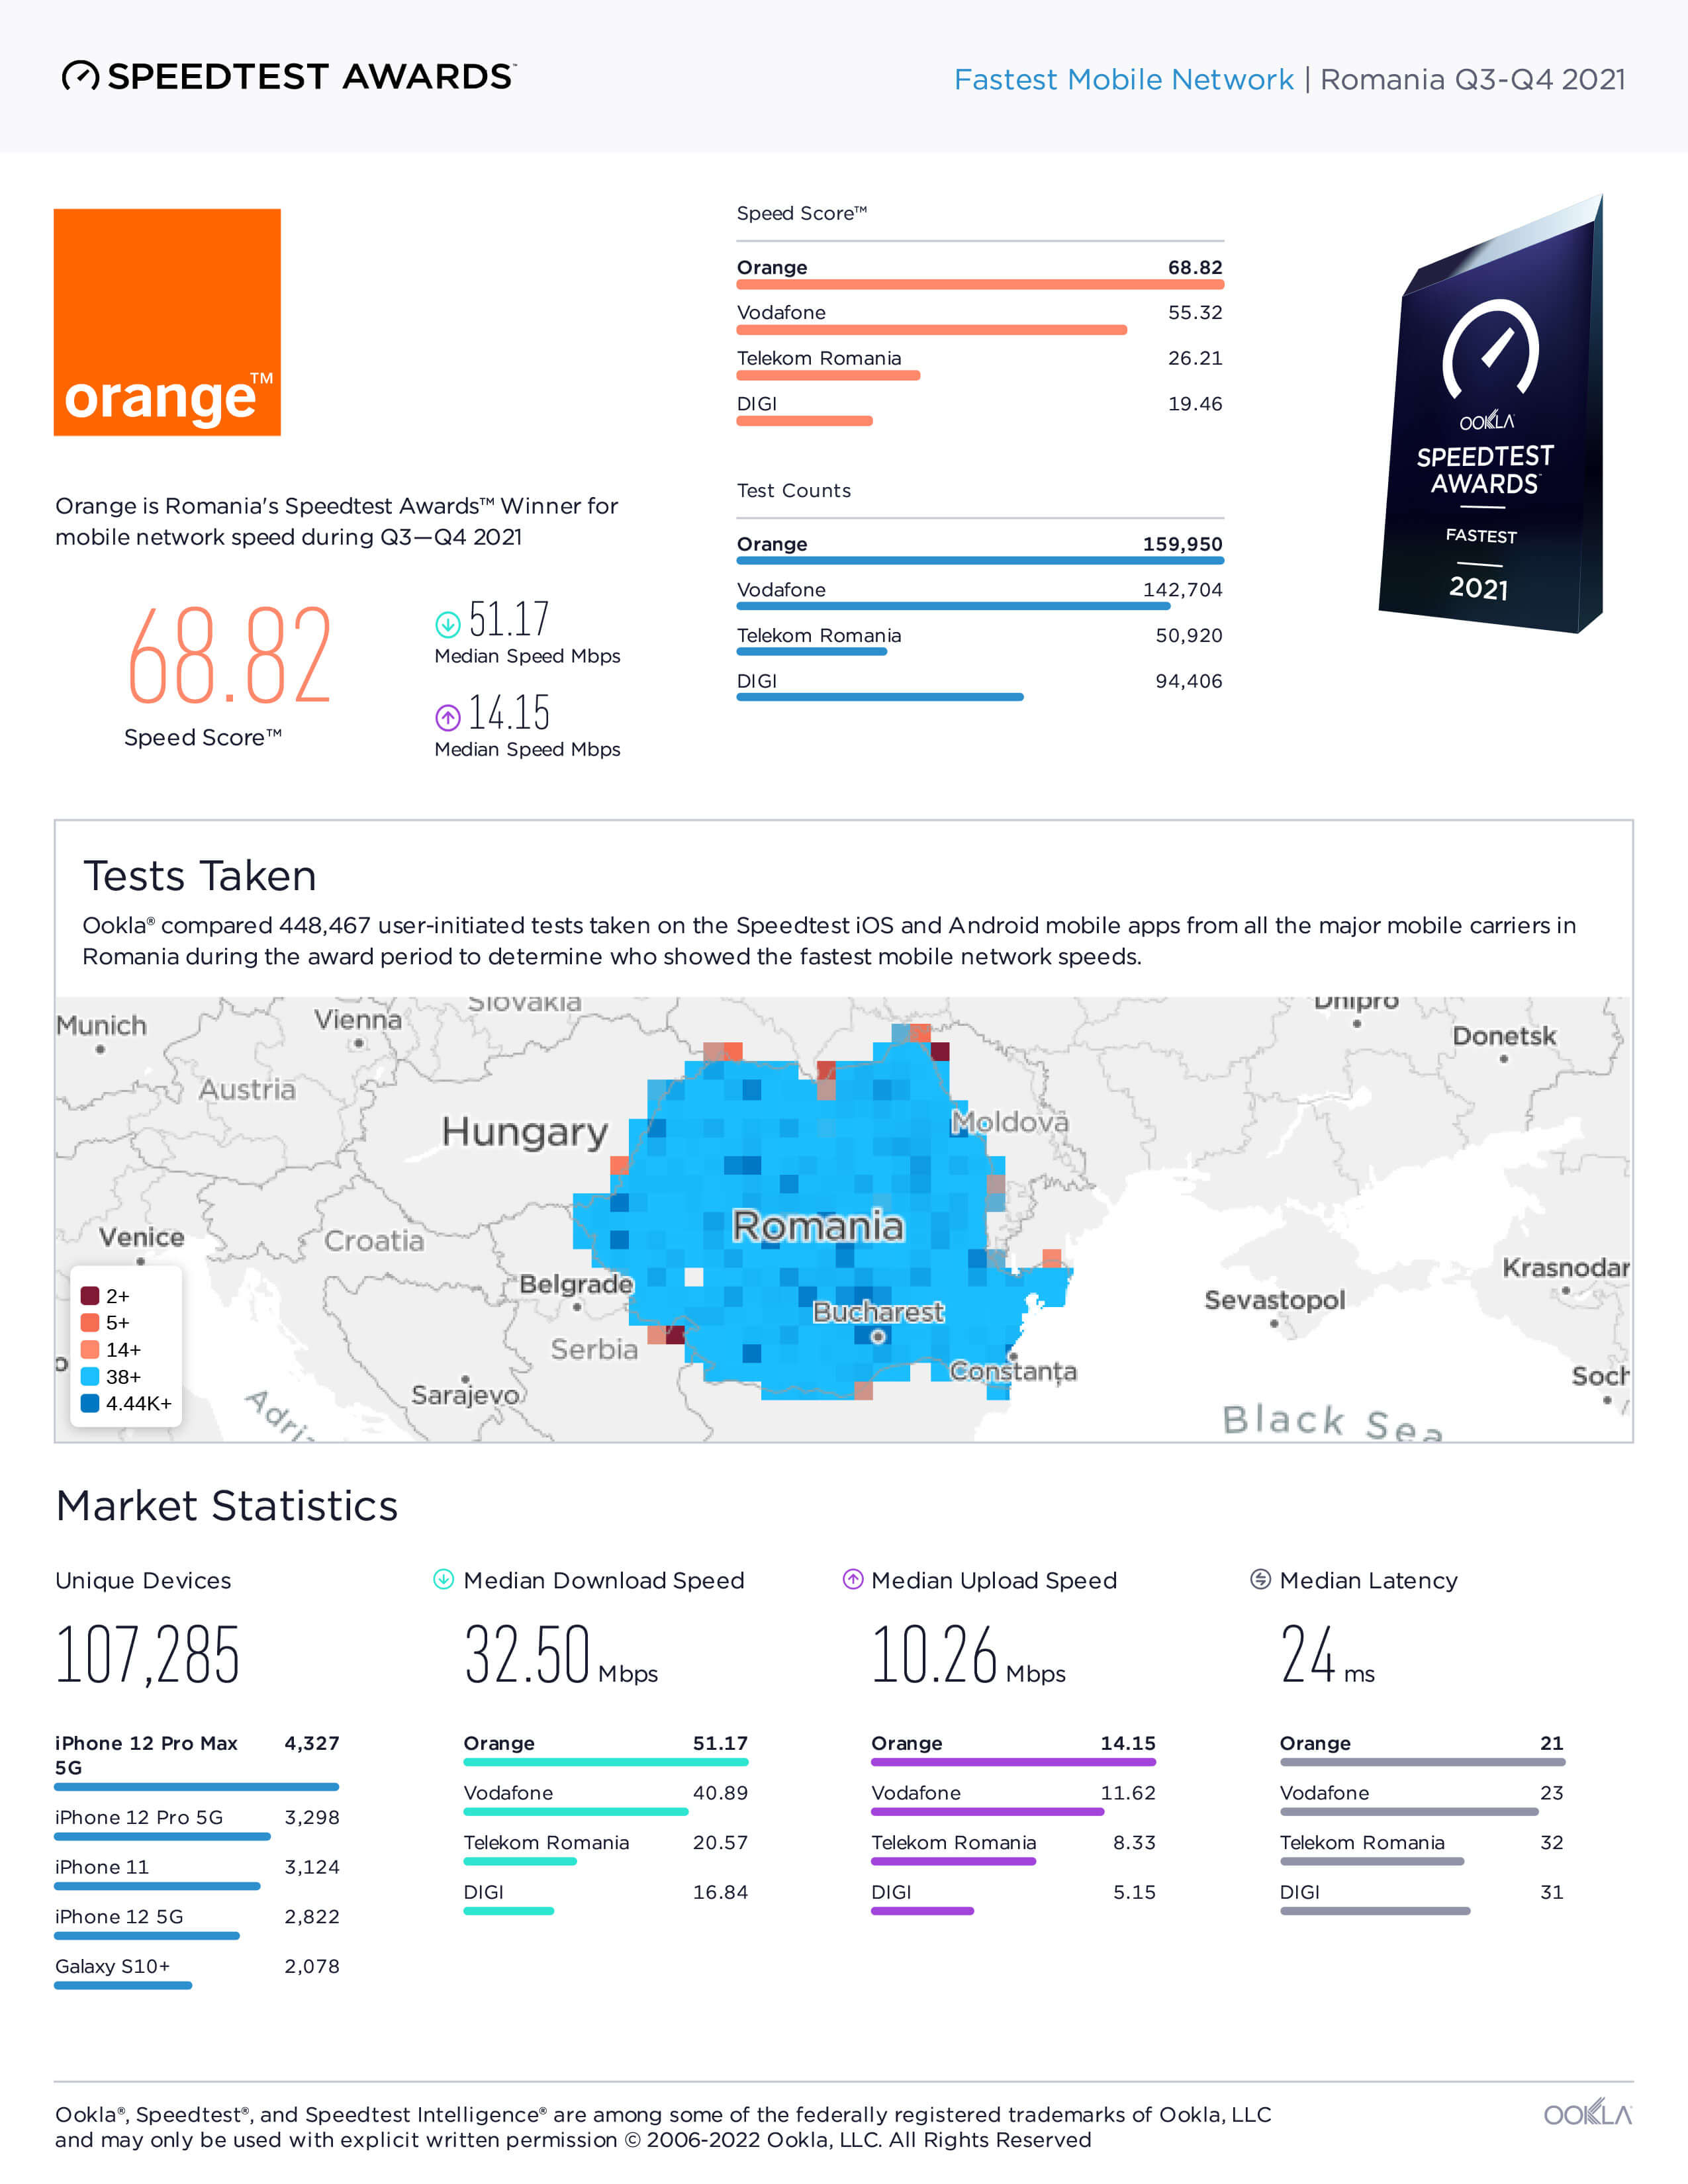 Romania-Fastest-Mobile-Network-Report--Q3Q42021-1